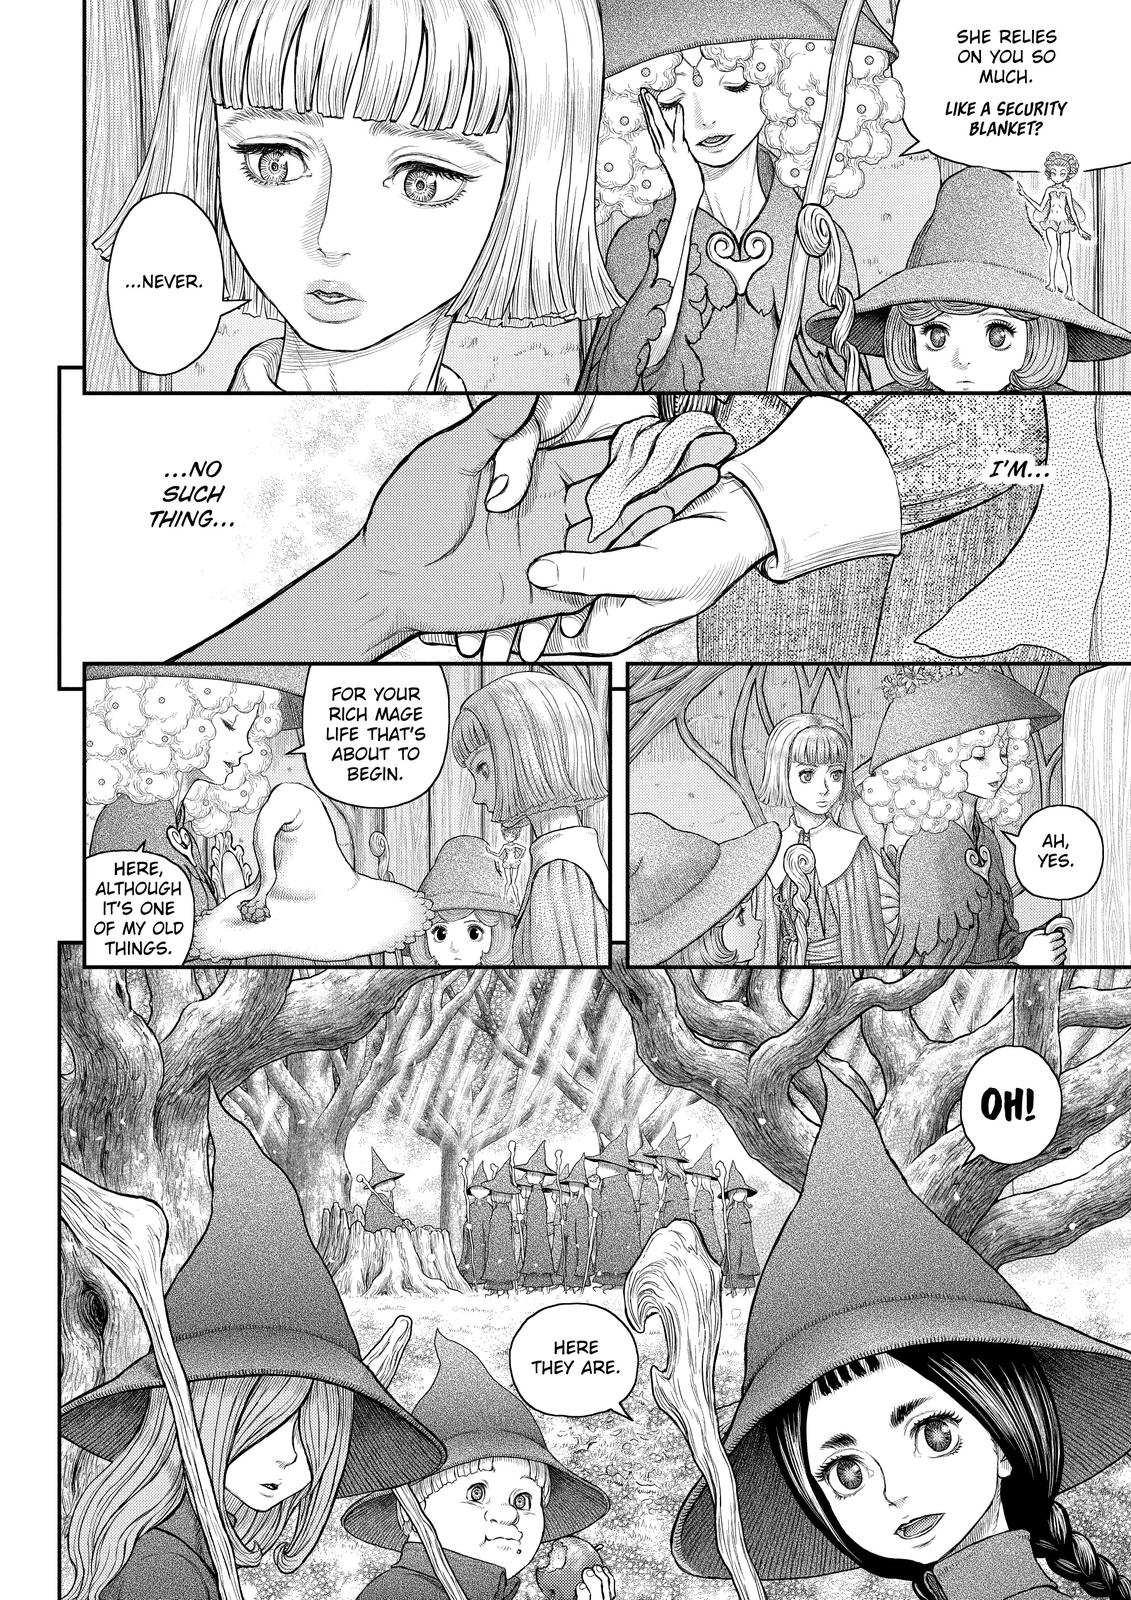 Berserk Manga Chapter 360 image 04